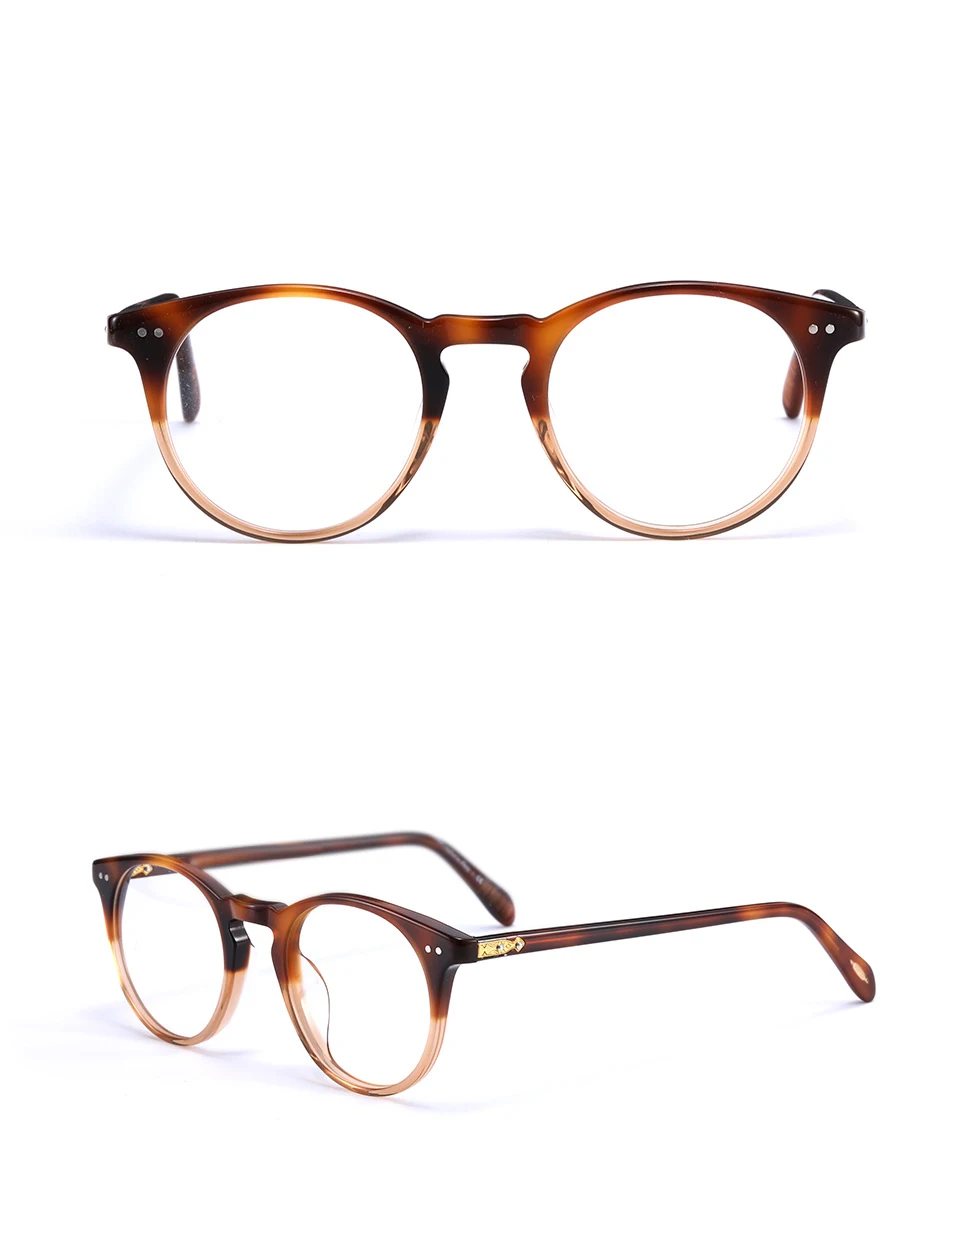 Круглые стильные оптические очки OV5256 близорукость очки для чтения оправа для мужчин и женщин sir О 'Мэлли ретро очки оправа